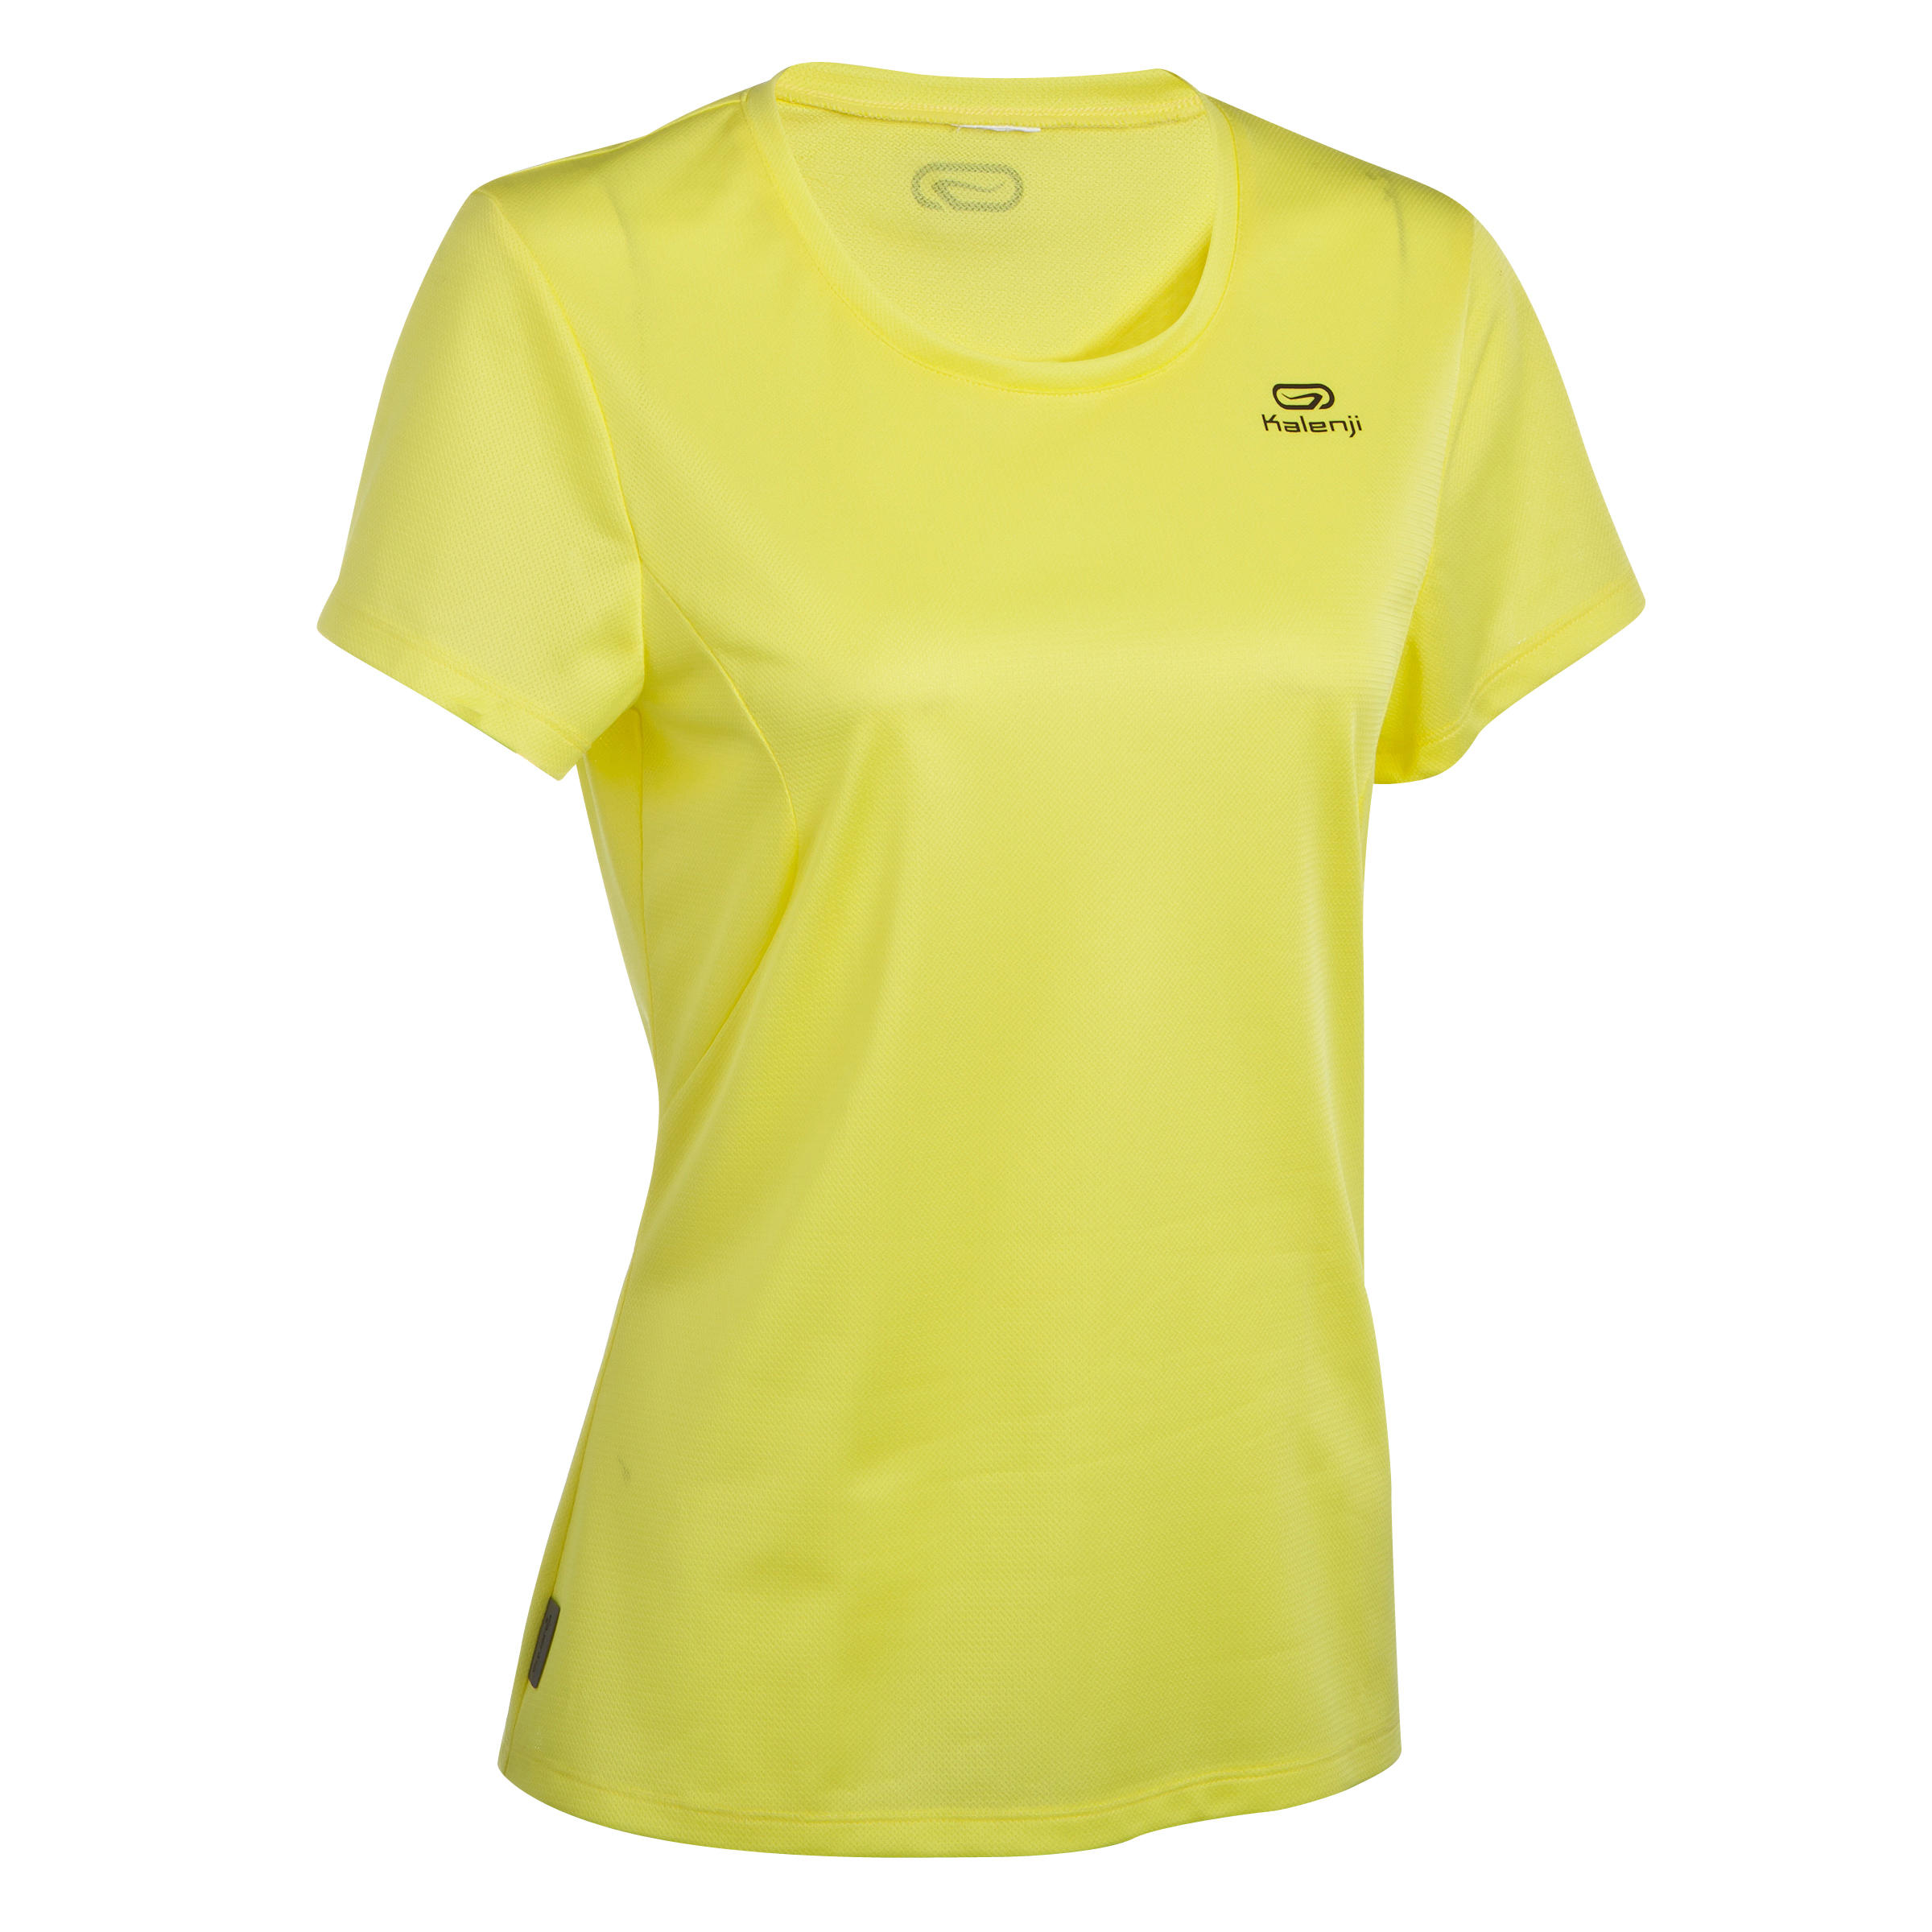 KALENJI Run Dry Women's Running T-Shirt - Yellow 